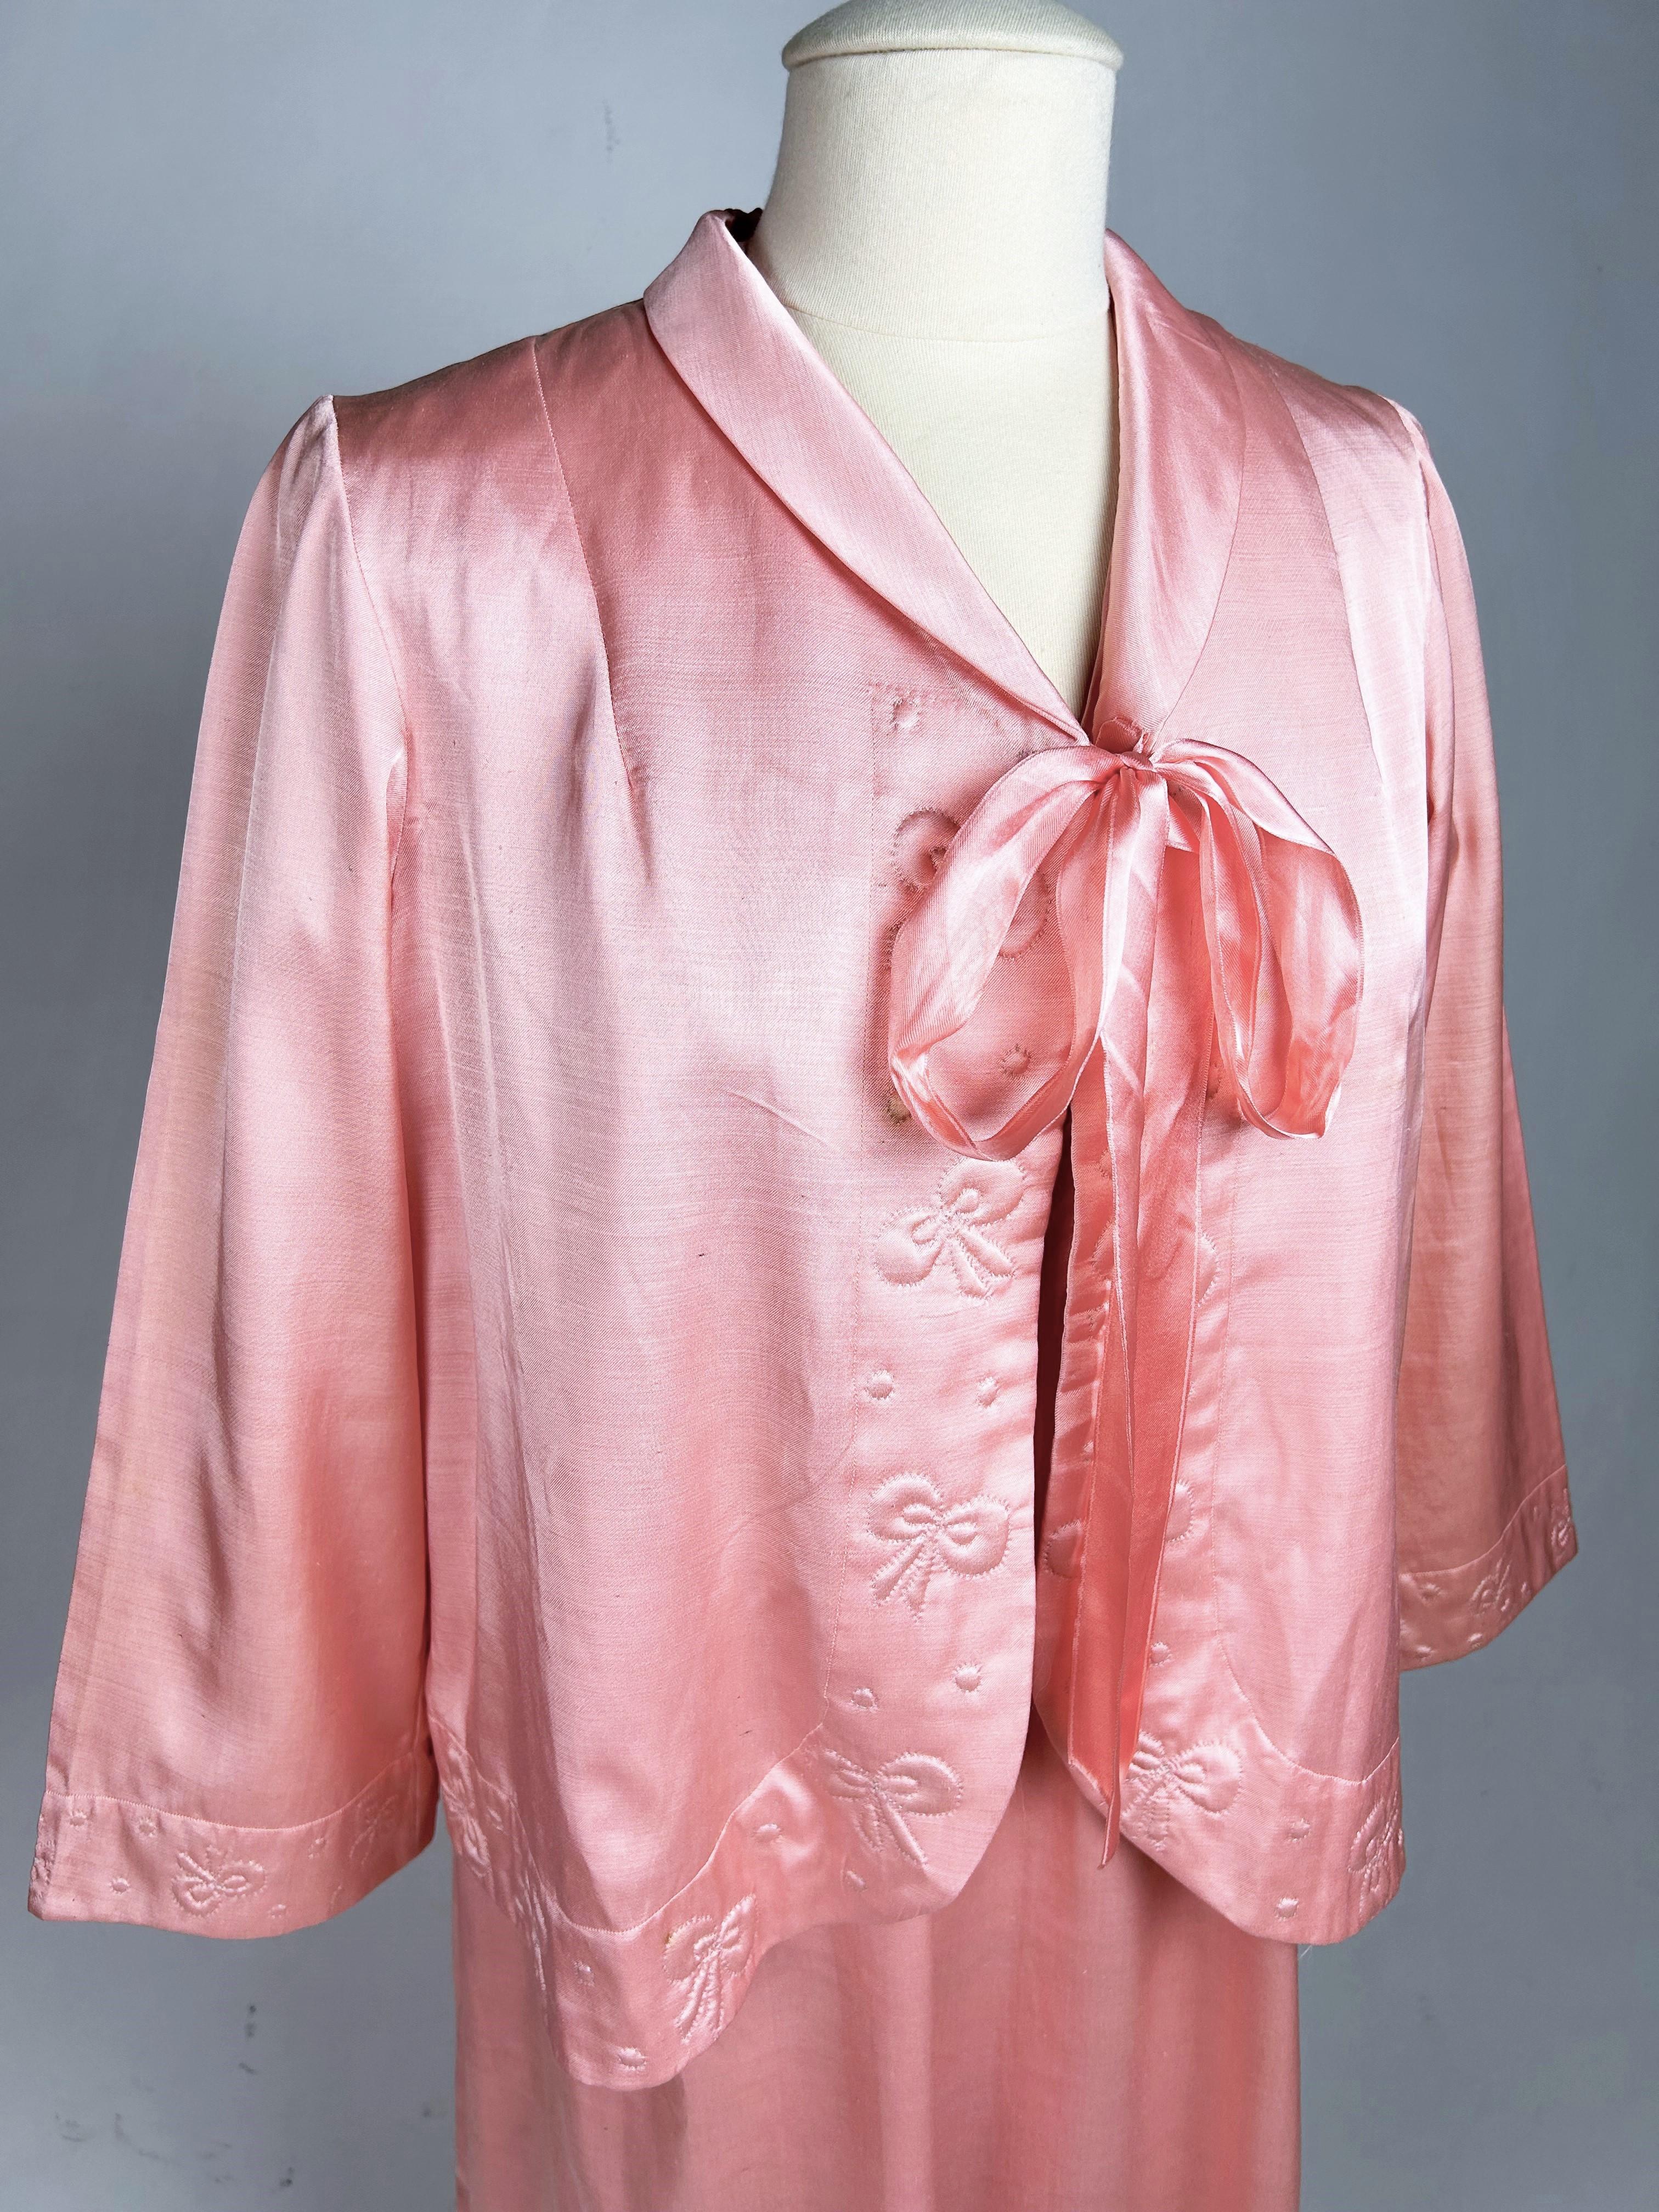 CIRCA 1950-1960

Frankreich

Nachtwäsche-Set bestehend aus einem Gürtelhemd und einem Wickel-Bolero aus rosa Satin aus den Jahren 1950-1960. Langes, volles Kleid mit kleinen Ballonärmeln, das vorne mit vier Perlmuttknöpfen geschlossen wird.